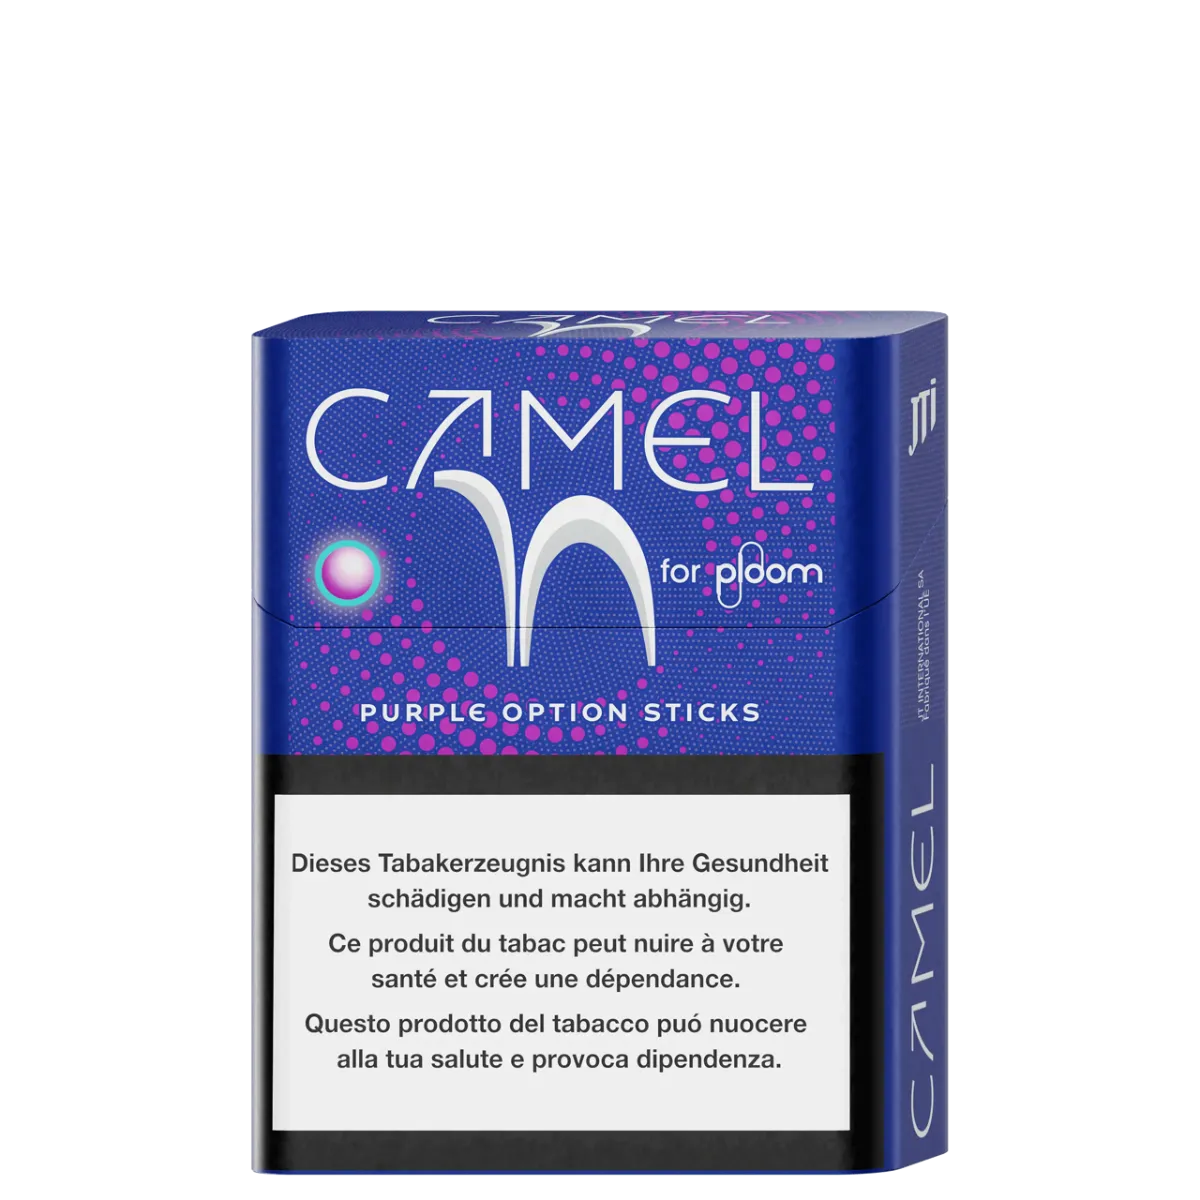 Camel Purple option sticks für ploom Verpackung